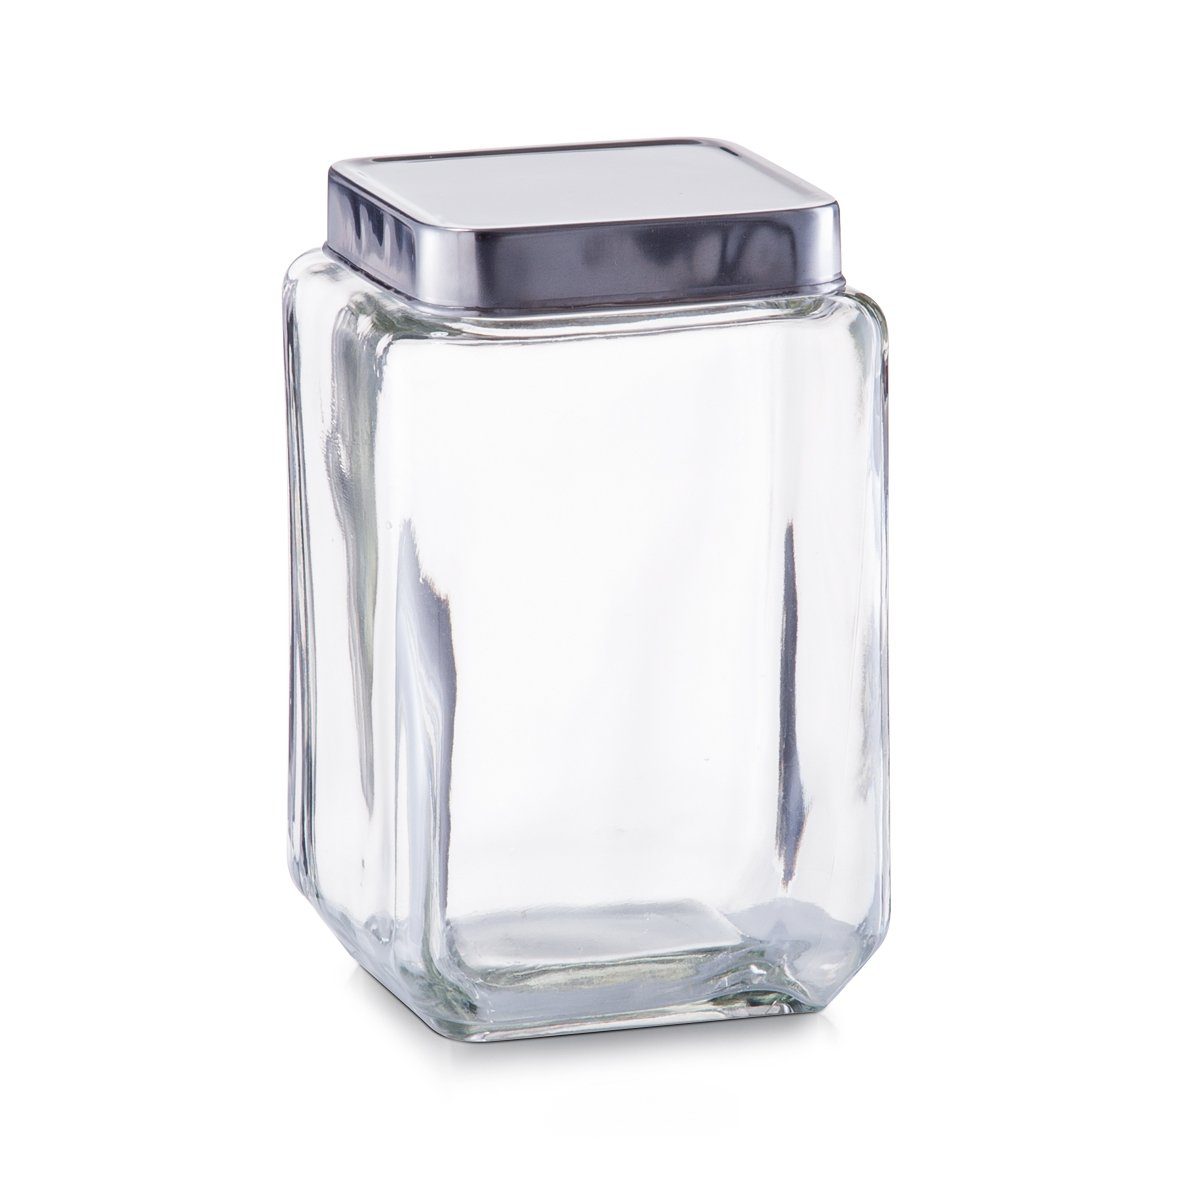 Zeller Present Vorratsglas Vorratsglas m. 18/0, transparent, und 11 18/0, x 1500 18 Edelstahldeckel, Glas/Edelstahl ml, cm, 11 gefertigt Edelstahl Glas/Edelstahl Glas x hochwertigem aus